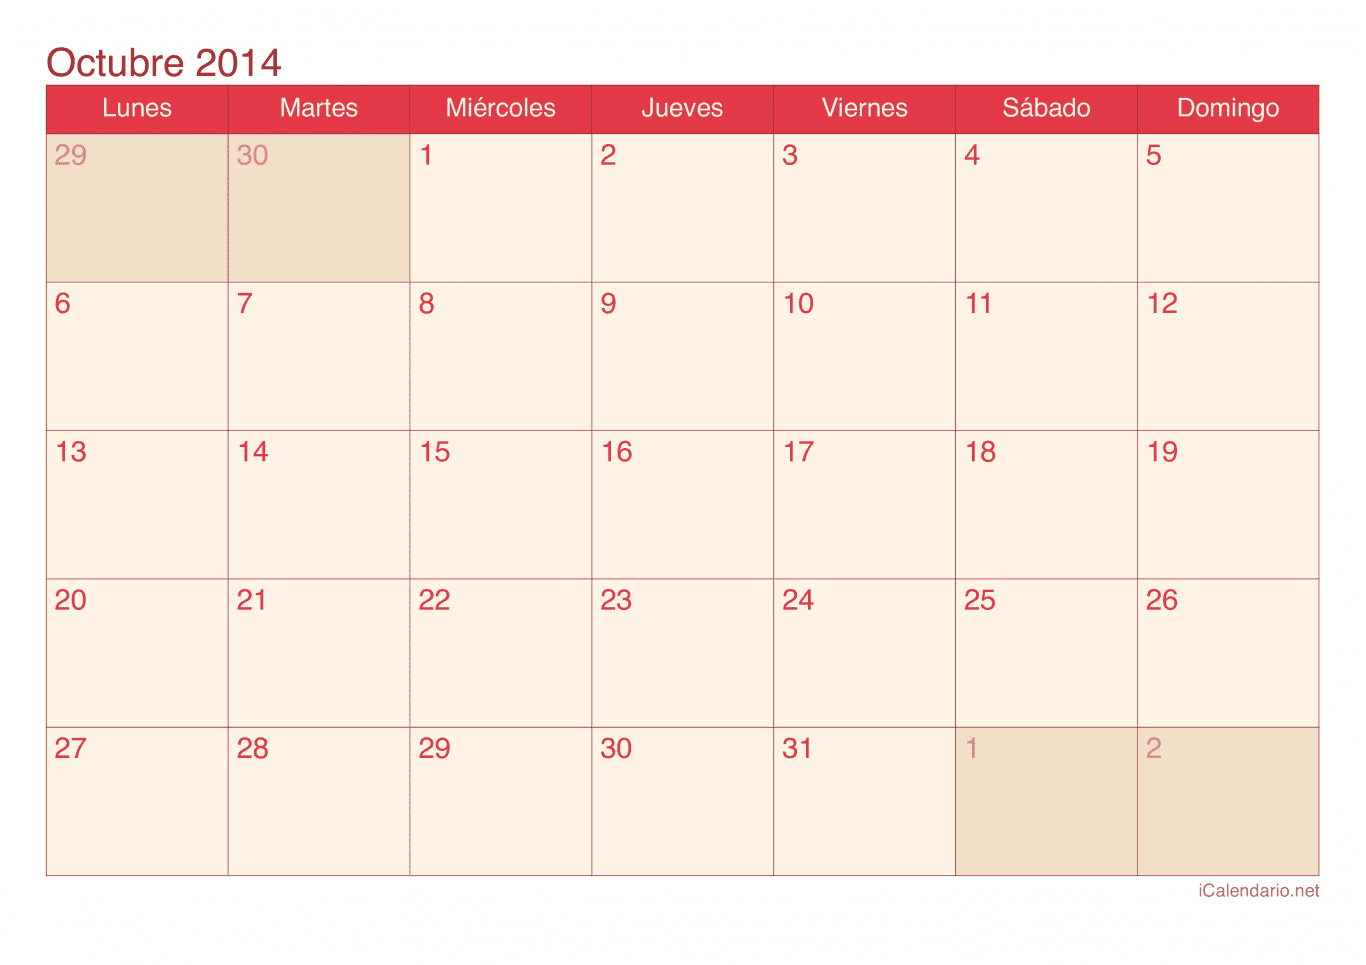 Calendario de octubre 2014 - Cherry